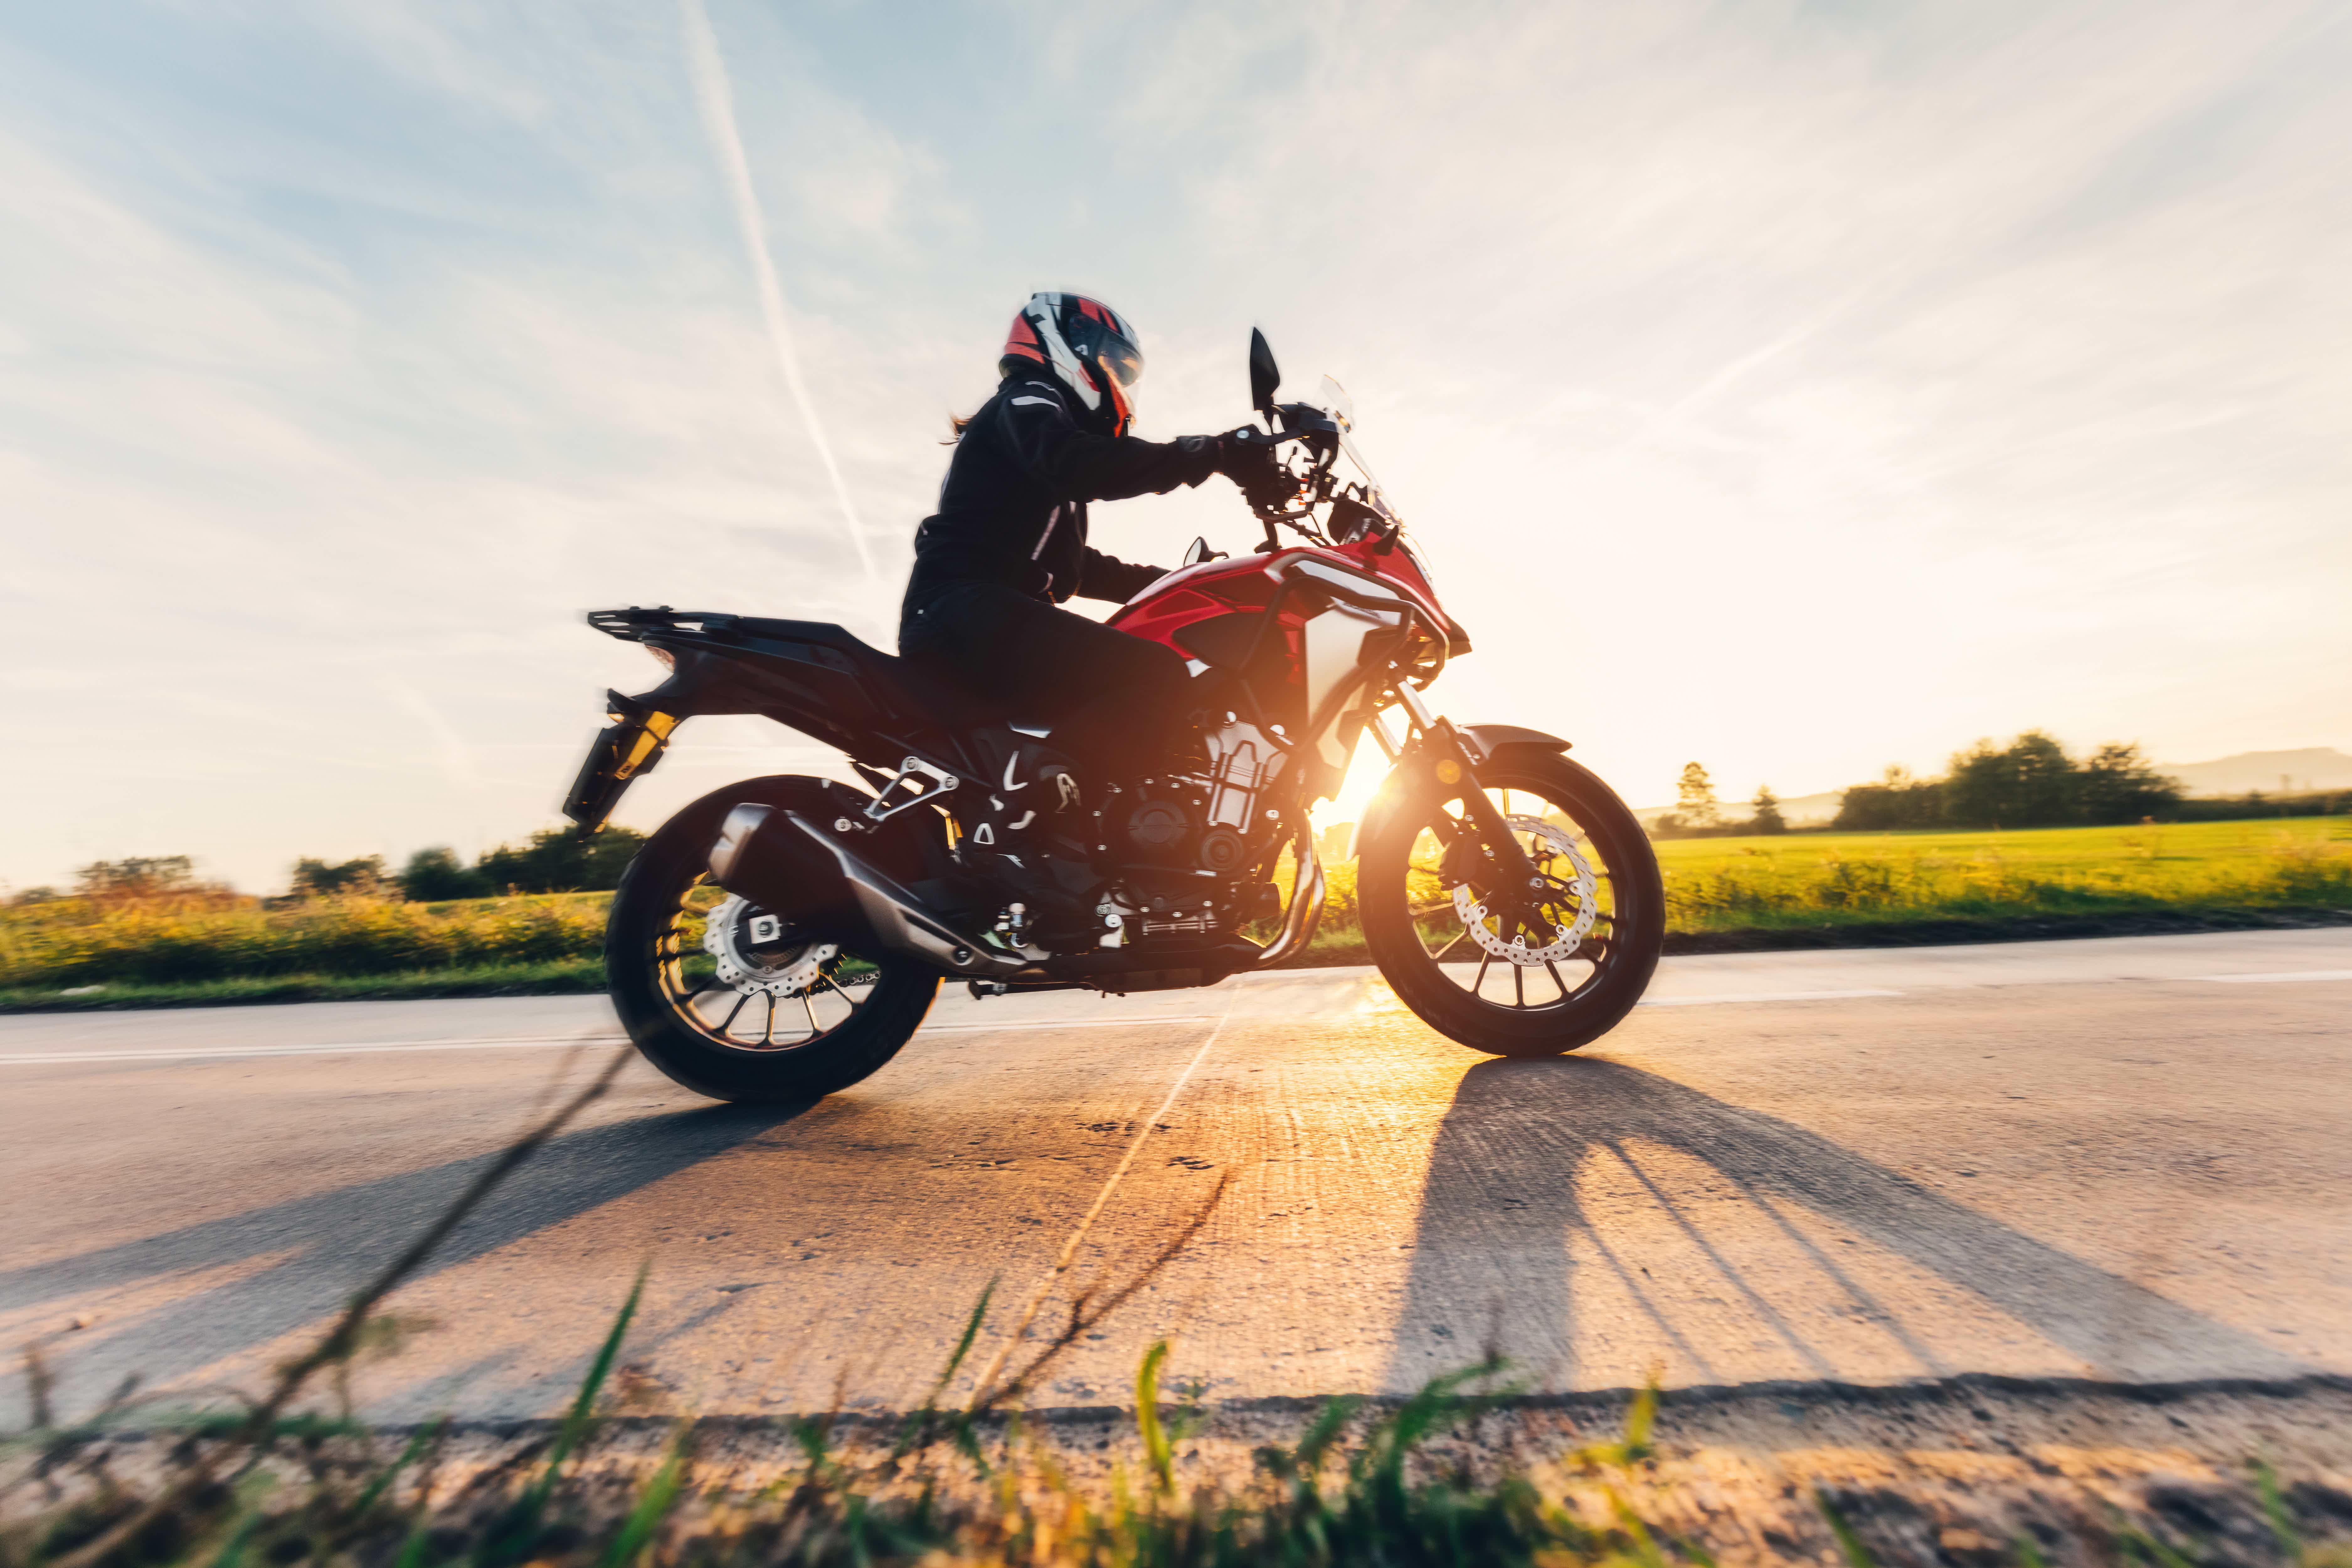 Mas, afinal, como funciona um aluguel de moto? Fonte: AdobeStock.